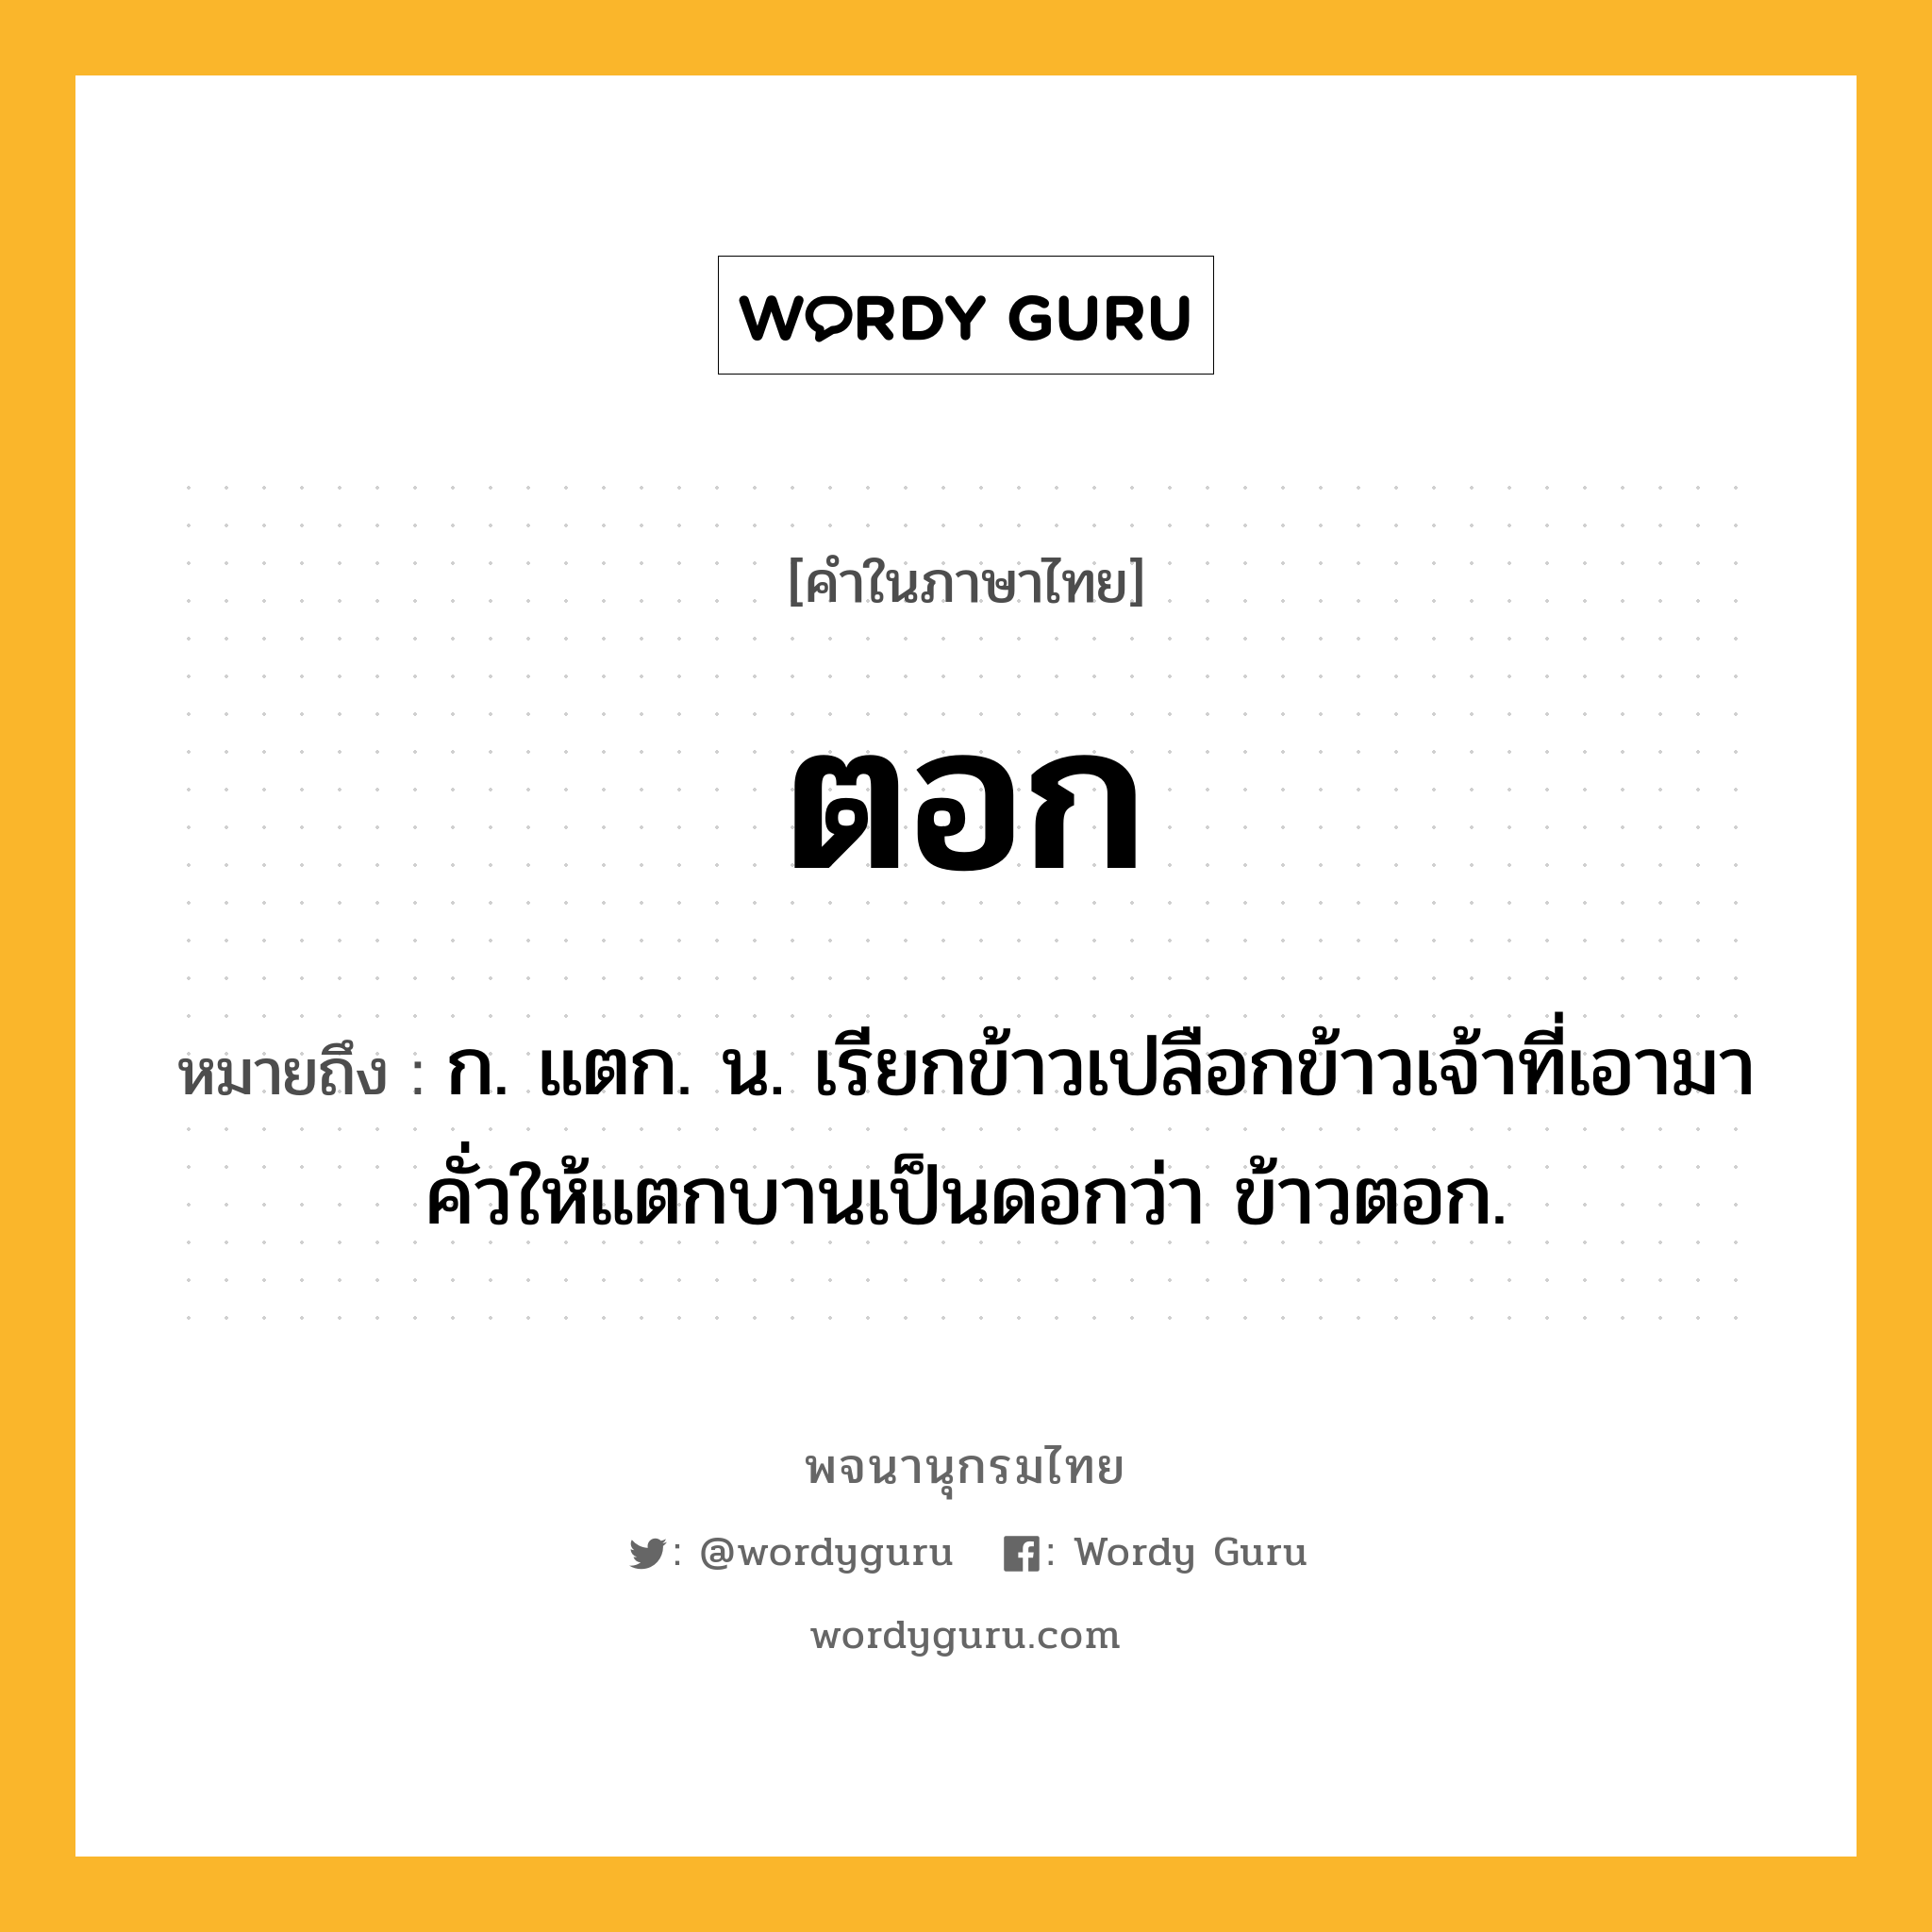 ตอก หมายถึงอะไร?, คำในภาษาไทย ตอก หมายถึง ก. แตก. น. เรียกข้าวเปลือกข้าวเจ้าที่เอามาคั่วให้แตกบานเป็นดอกว่า ข้าวตอก.